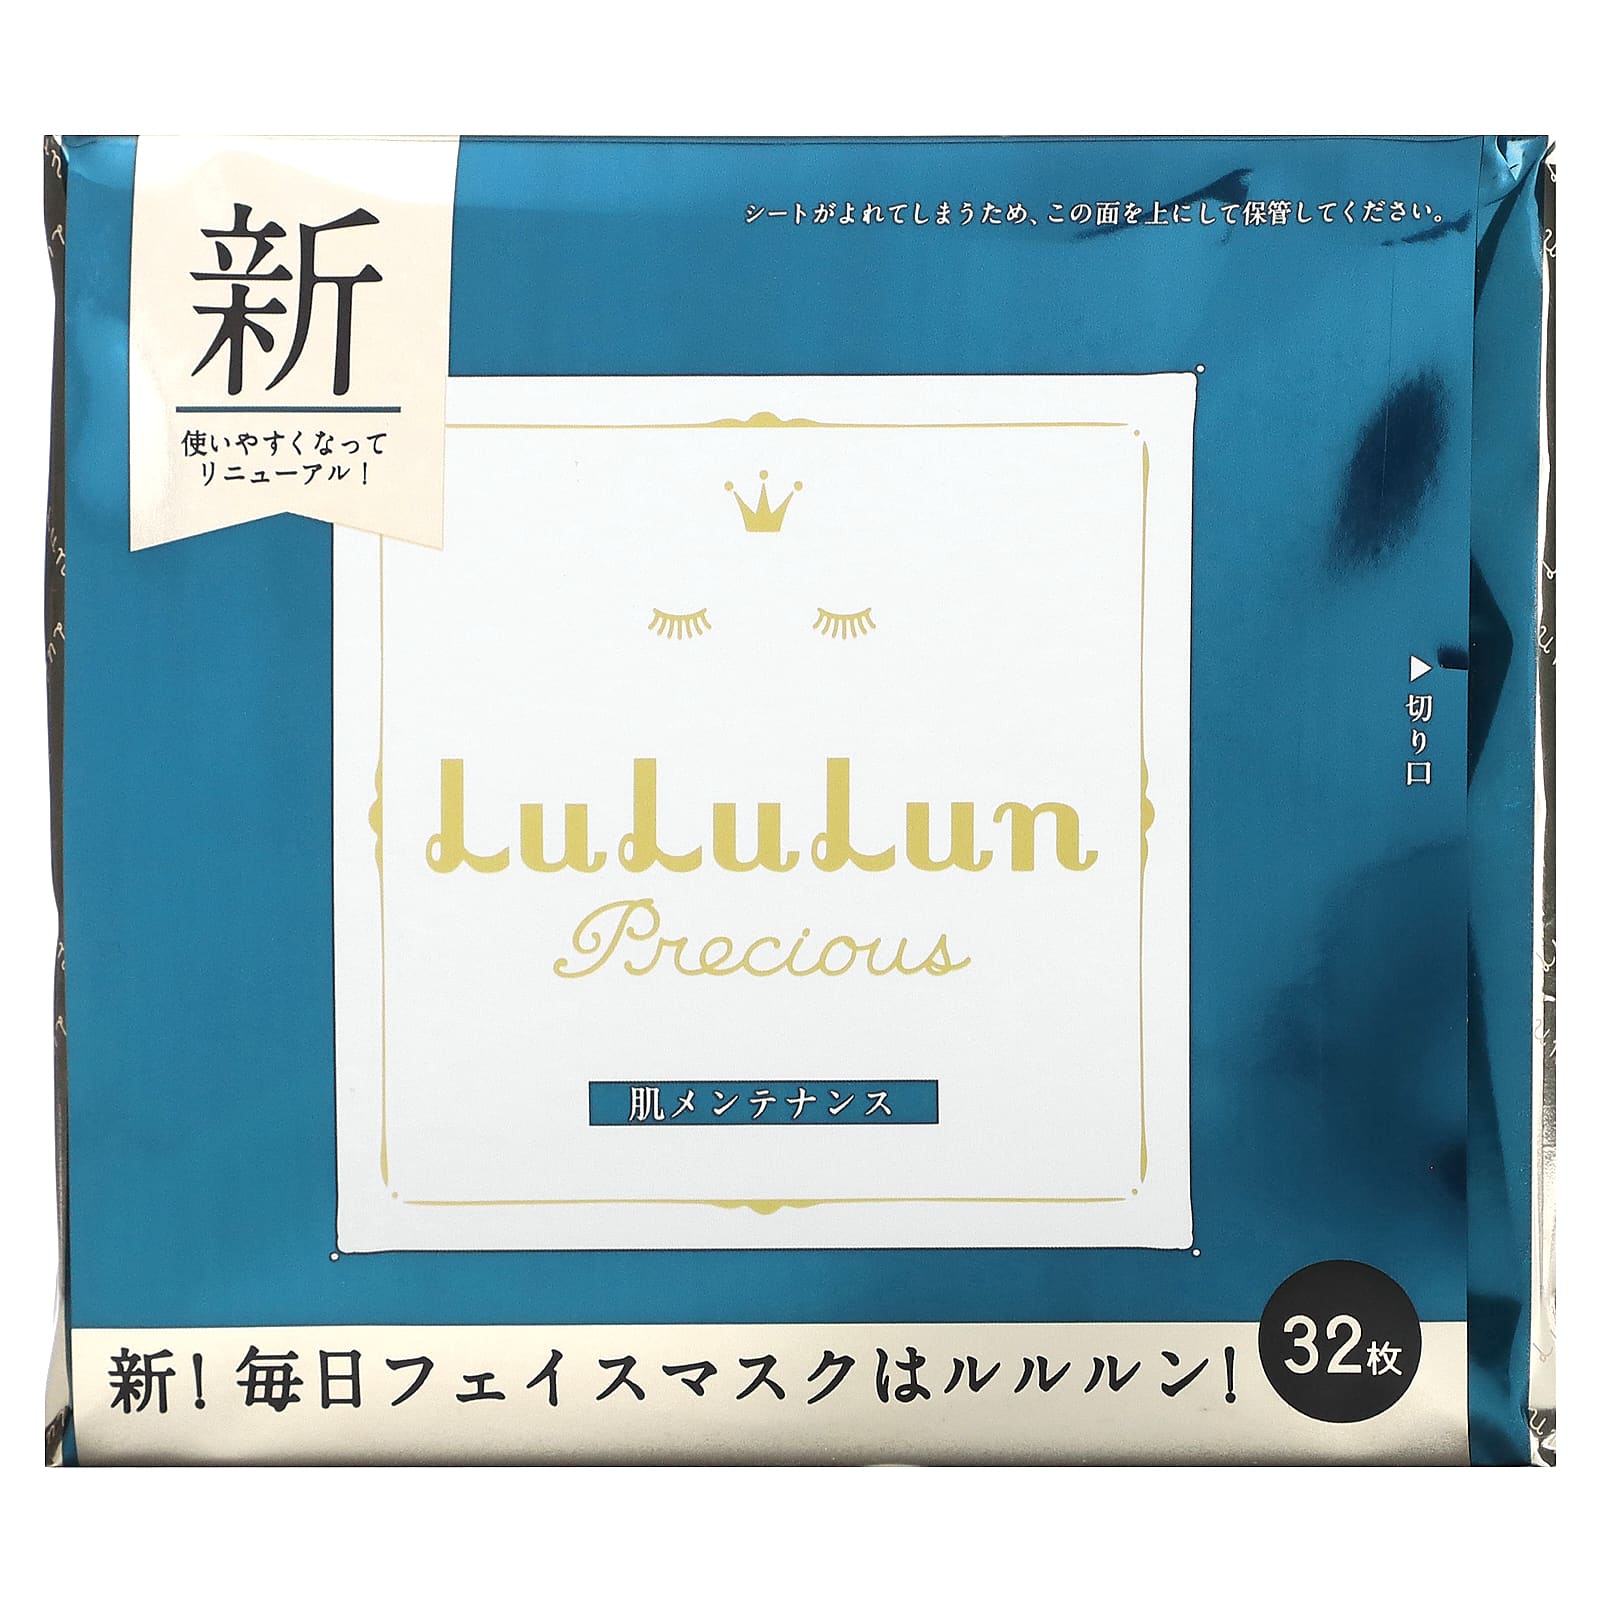 1080円 【コンビニ受取対応商品】 LuLuLu プレシャス朝用マスク